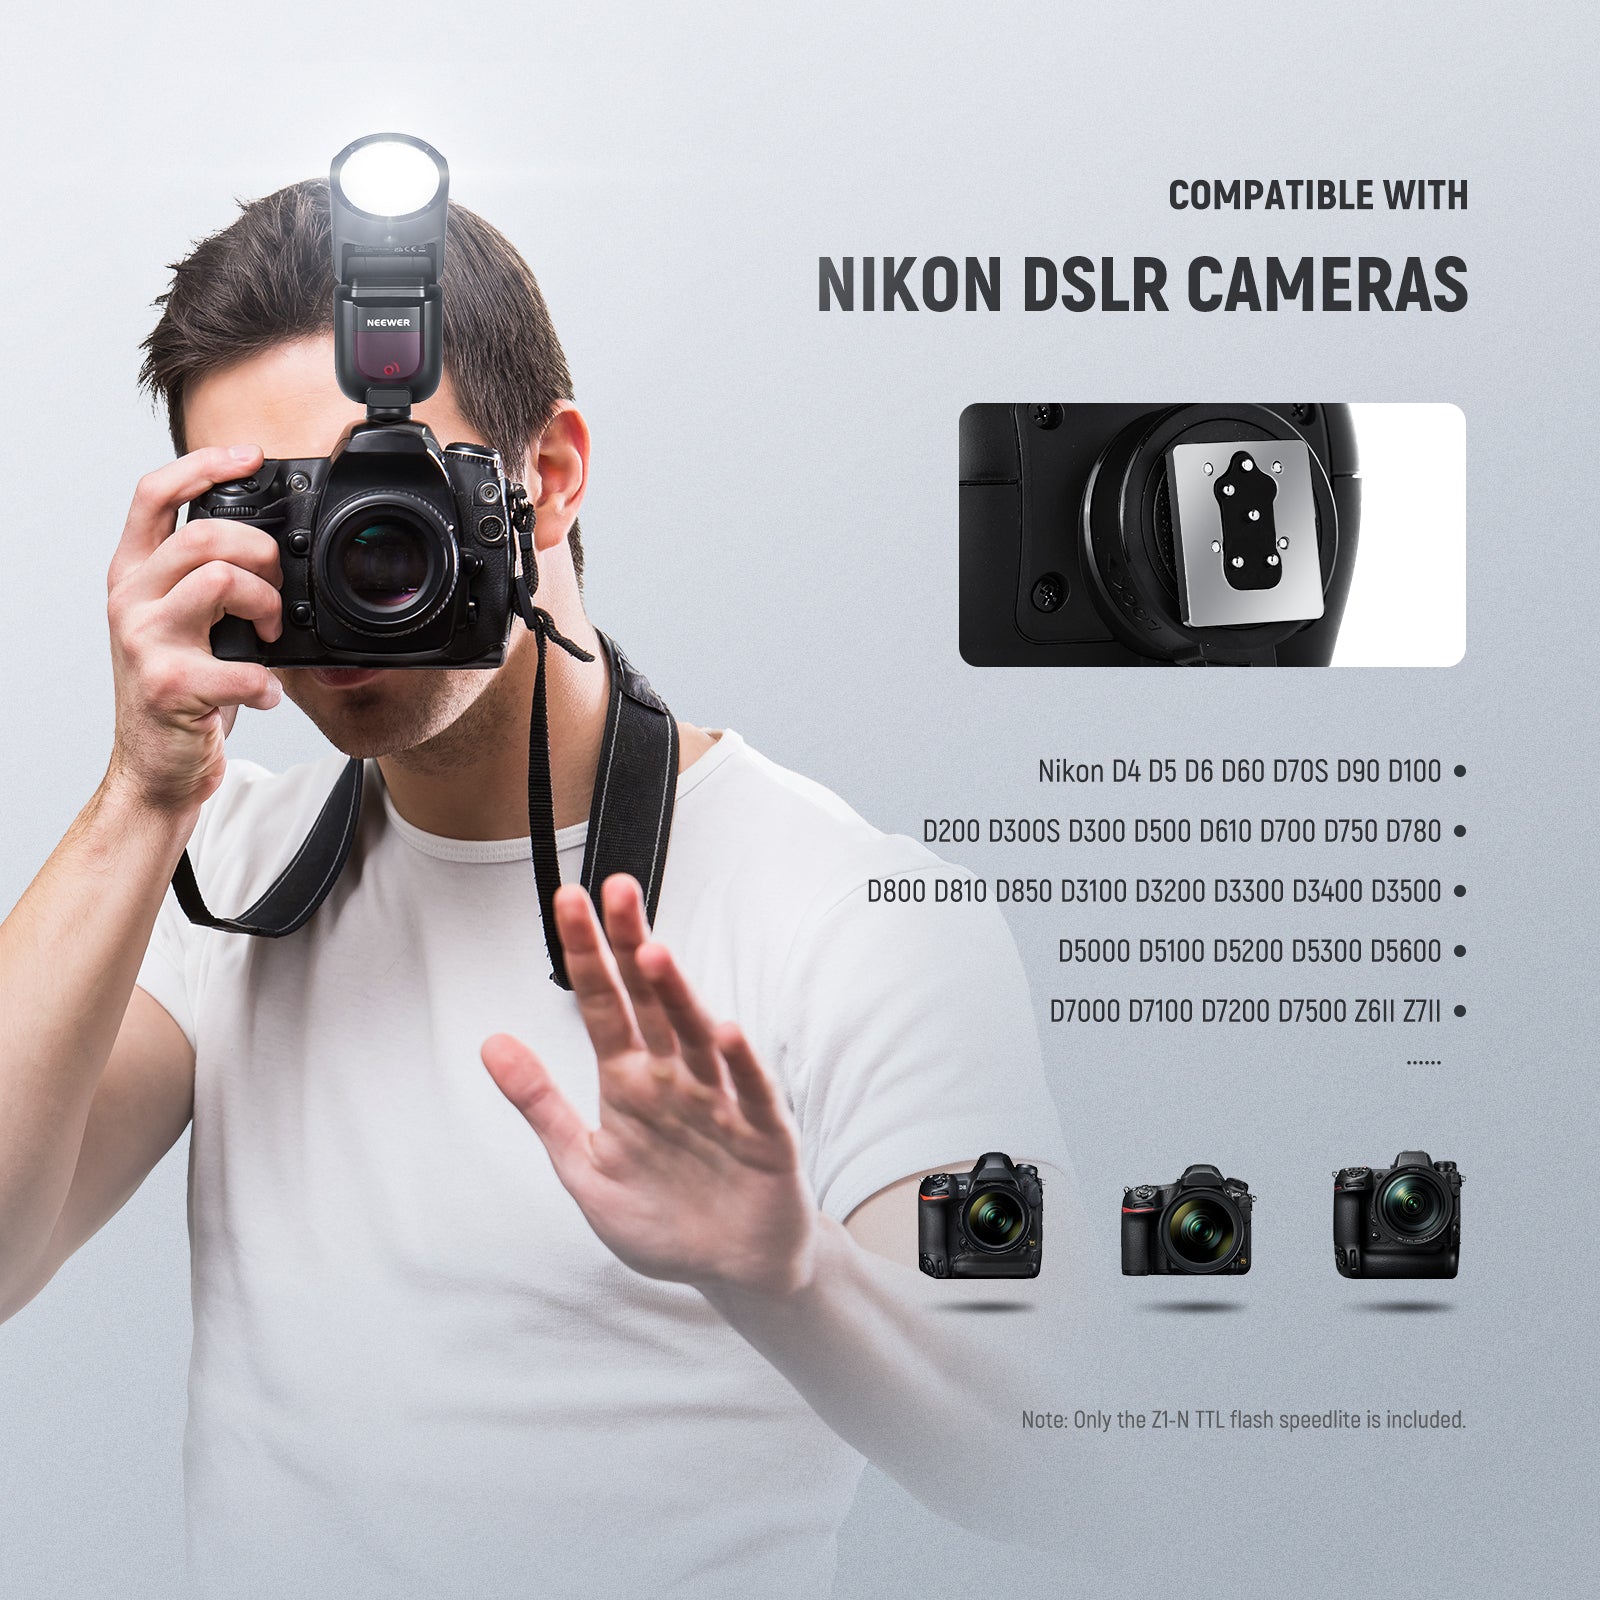 Reisbureau stuiten op verschijnen NEEWER Z1-N TTL Round Head Flash Speedlite for Nikon DSLR Cameras - NEEWER  – neewer.com